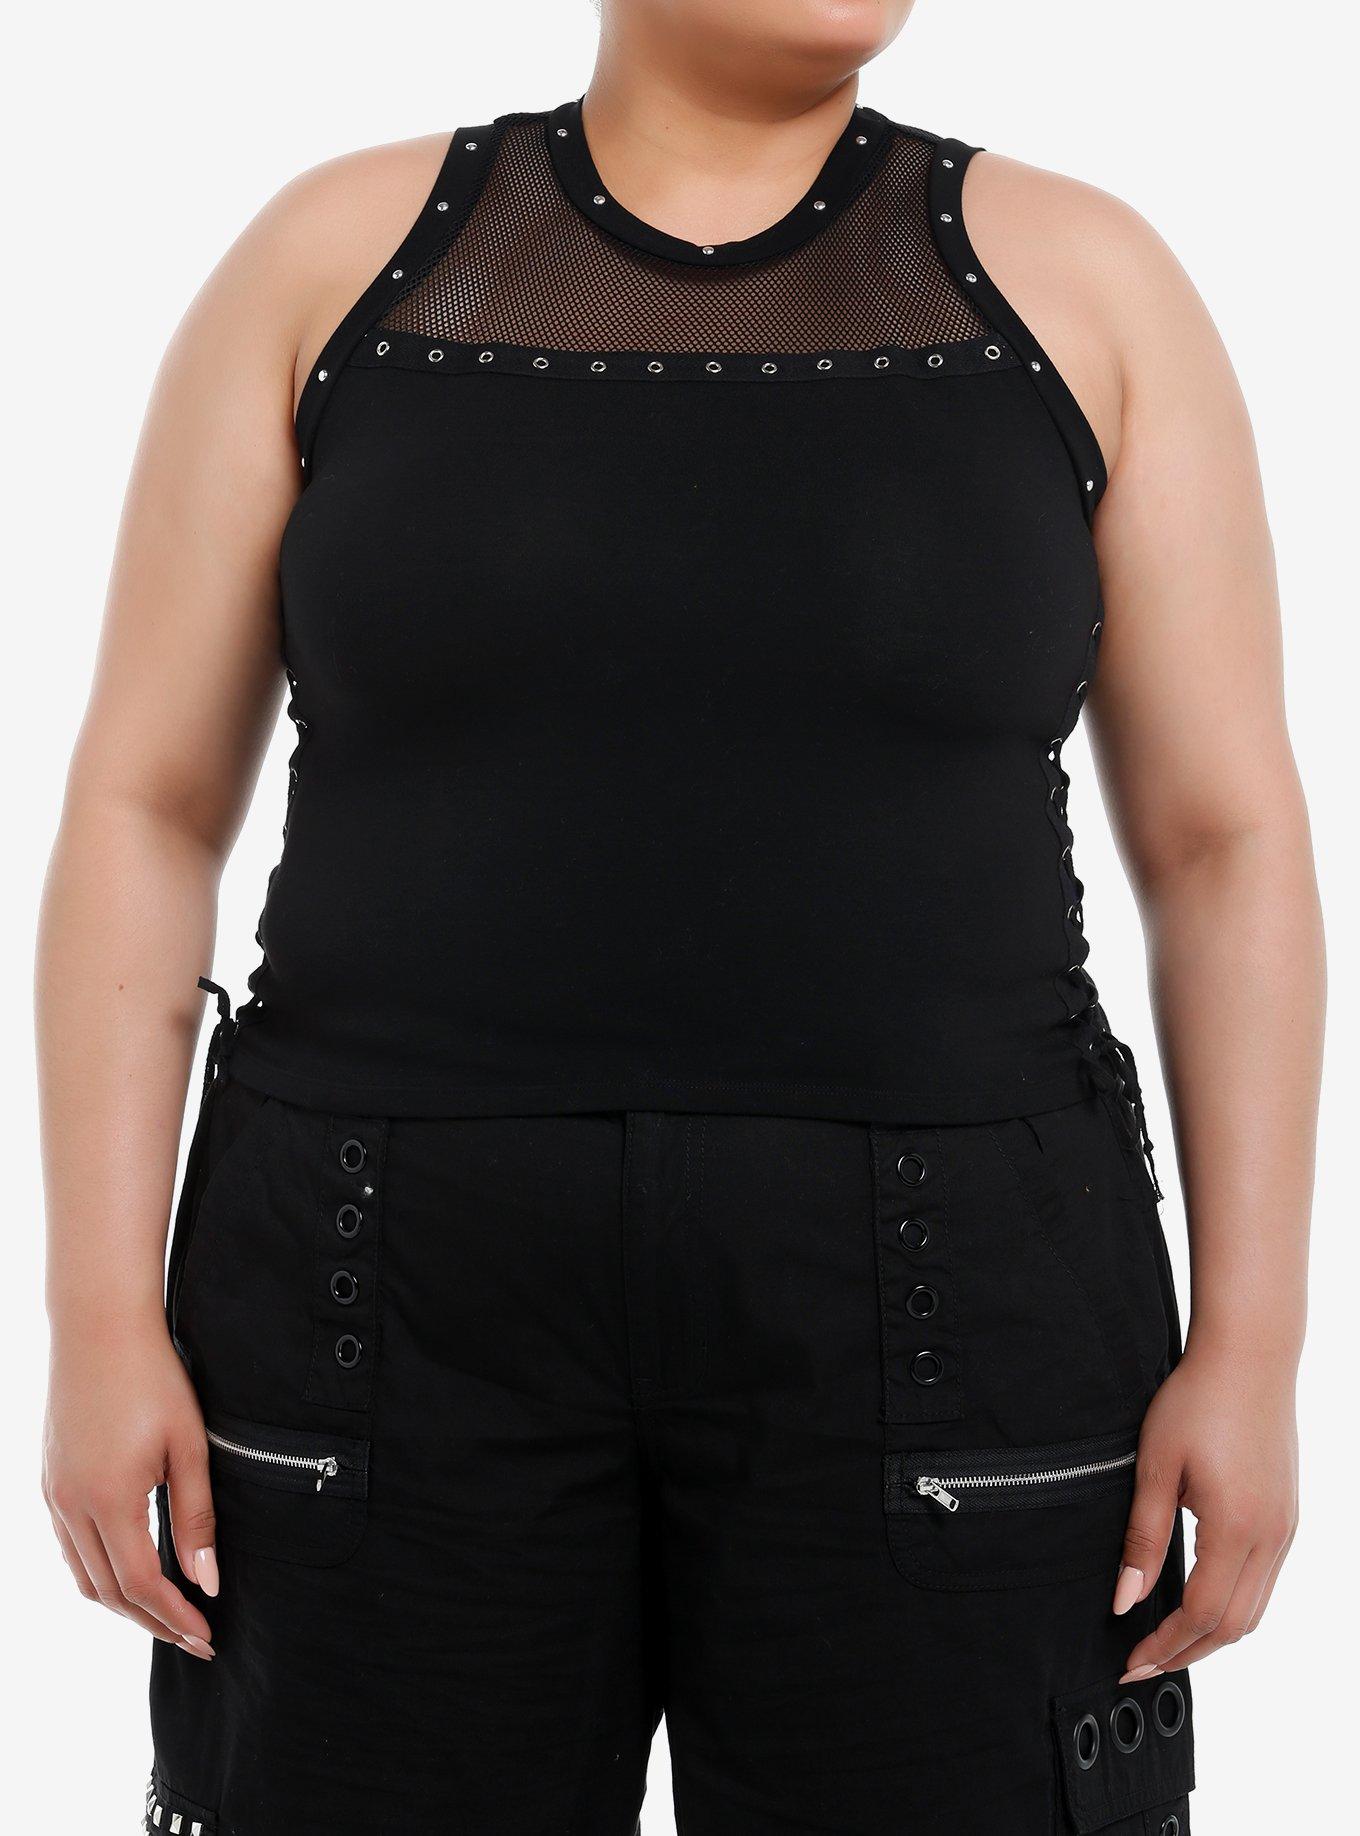 Social Collision Fishnet Grommet Lace-Up Girls Tank Top Plus Size, BLACK, hi-res